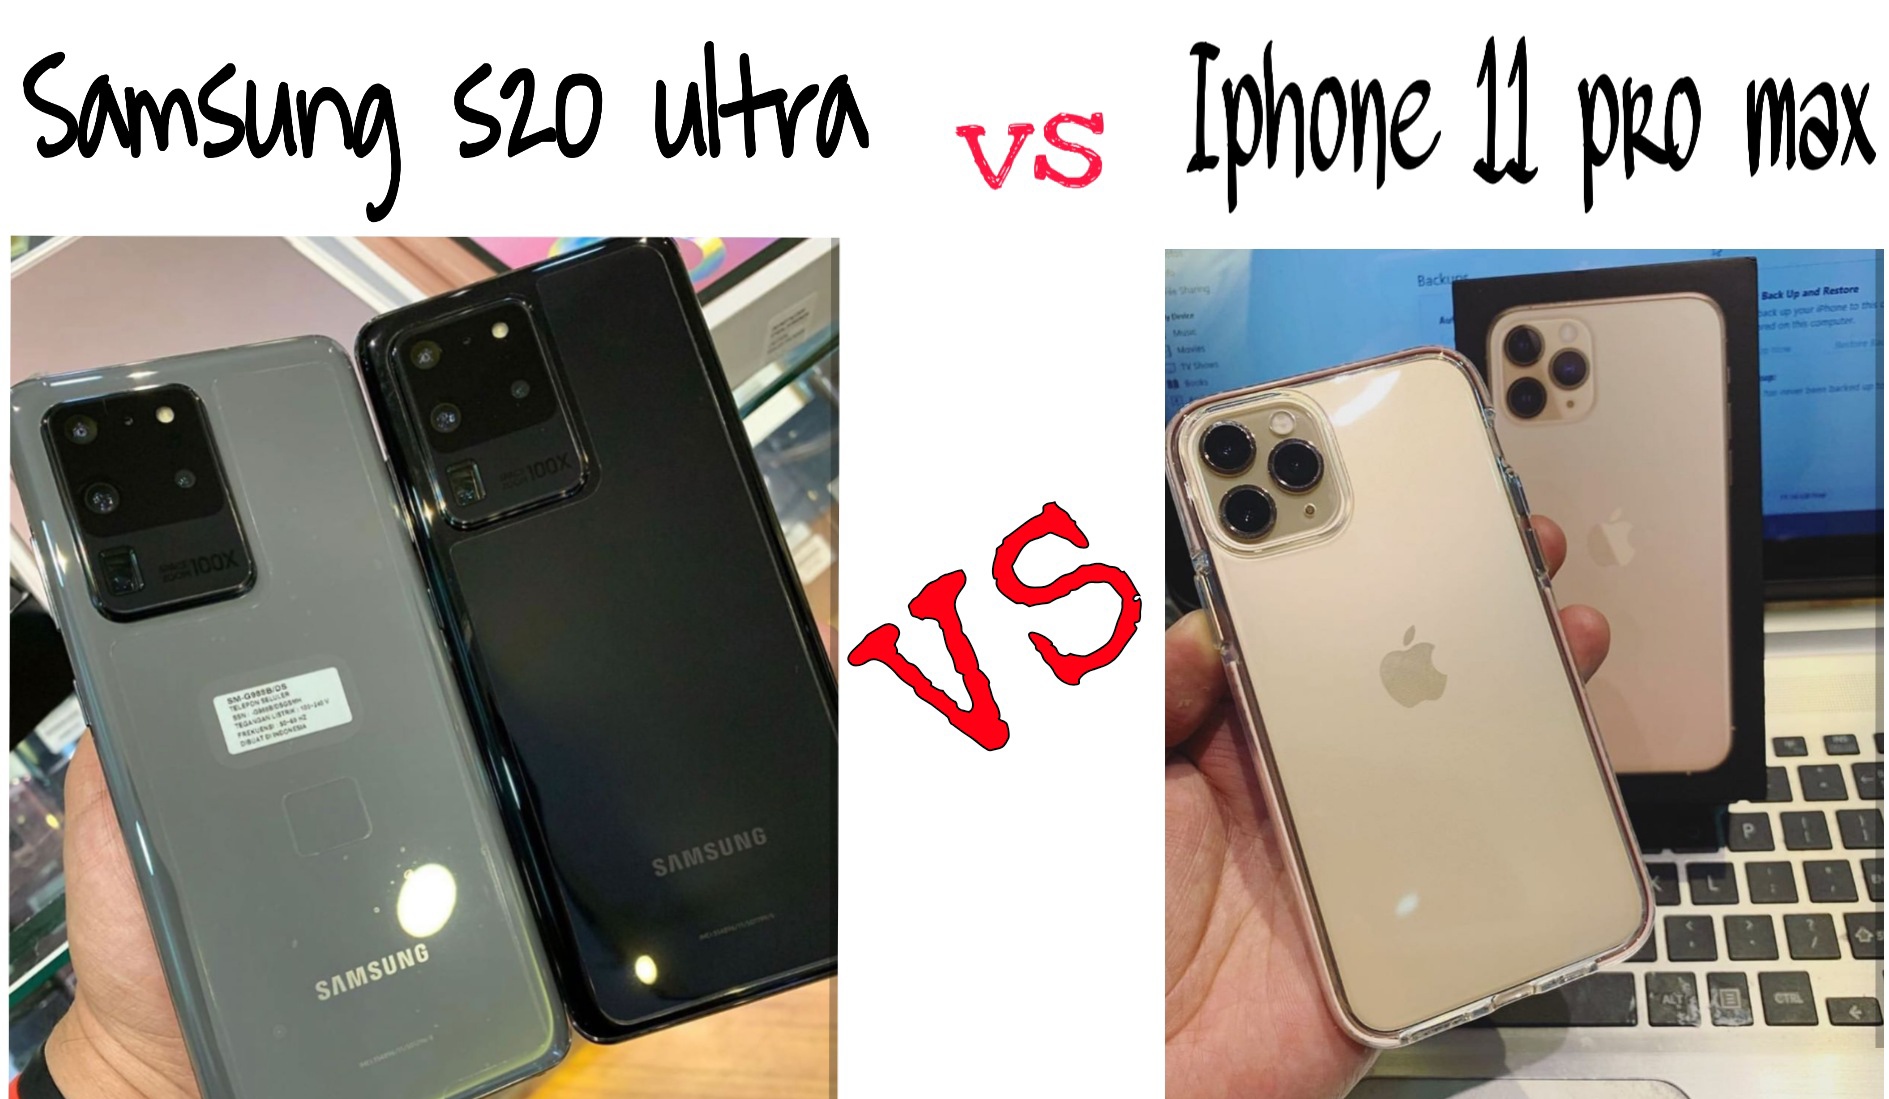 مقارنة/ الهاتفين العملاقين iPhone 11 pro max VS Samsung s20 ultra